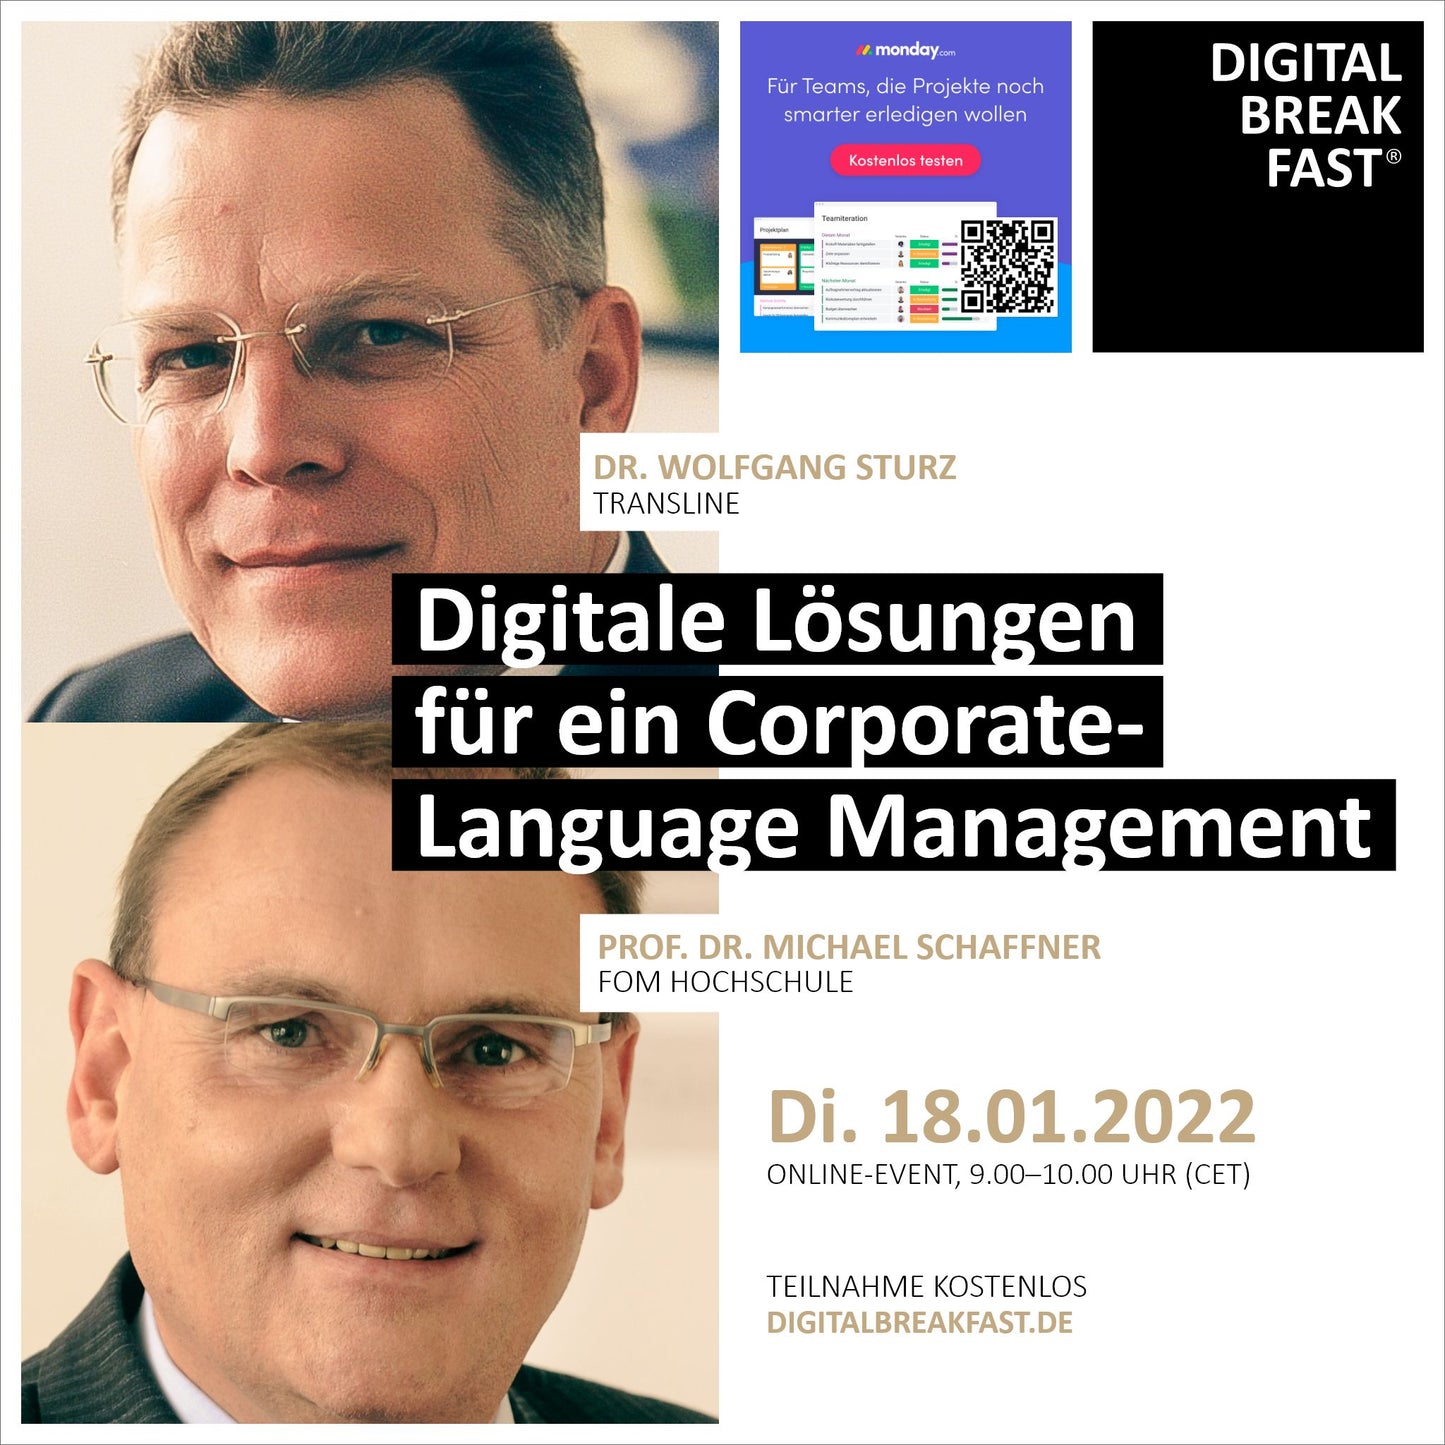 PRÄSENTATION | 18.01.2022 | "Digitale Lösungen für ein Corporate-Language-Management"